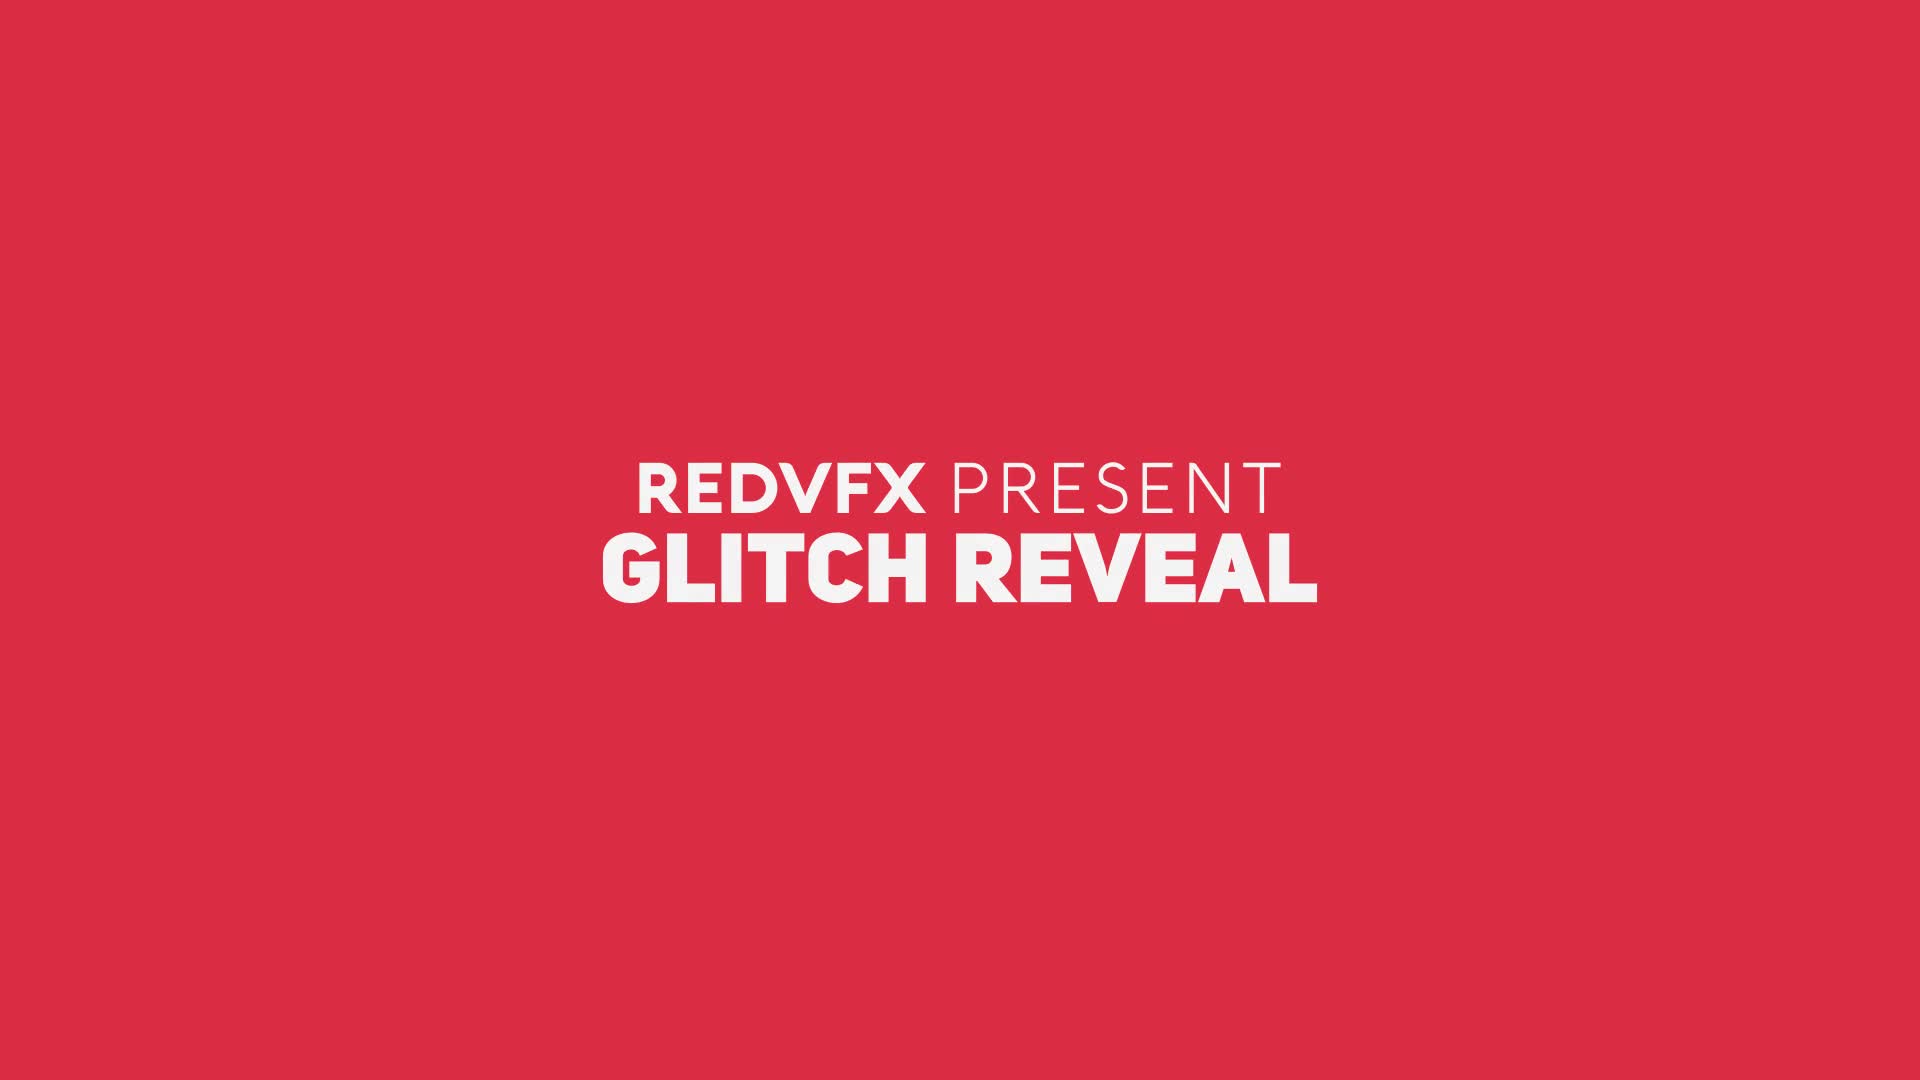 Glitch Reveal Premiere Pro Videohive 33585466 Premiere Pro Image 1